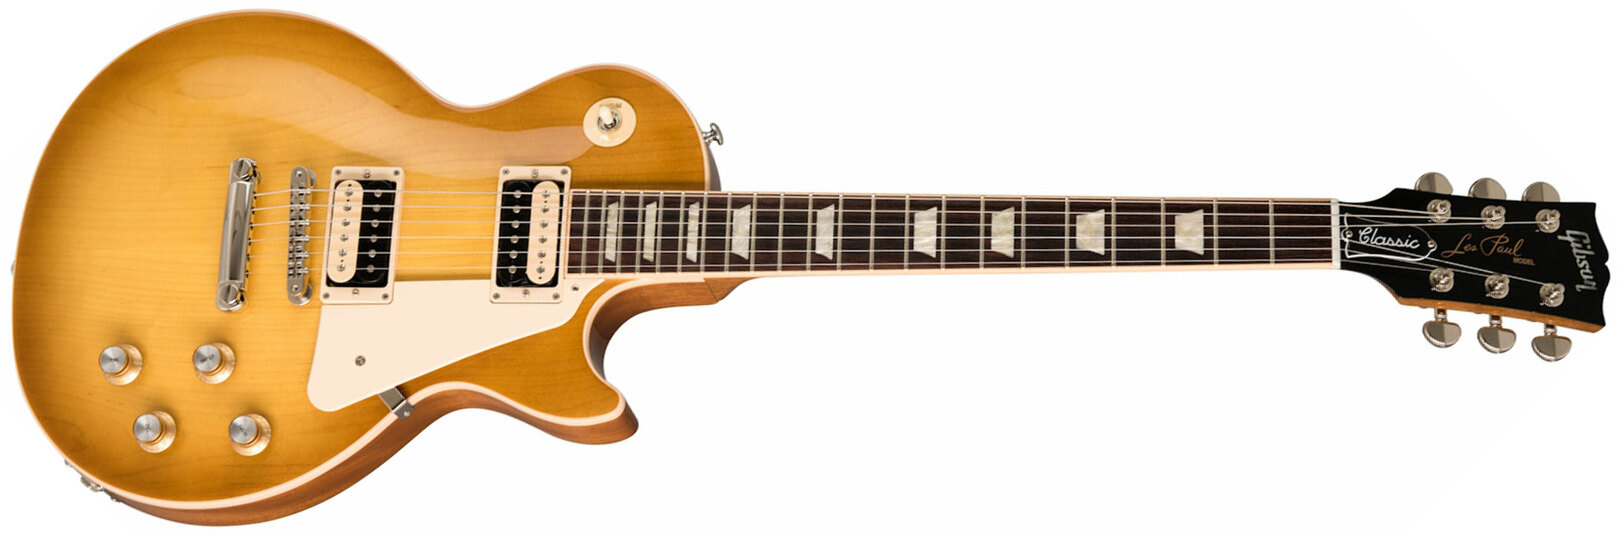 Gibson Les Paul Classic Modern 2h Ht Rw - Honeyburst - Guitarra eléctrica de corte único. - Main picture